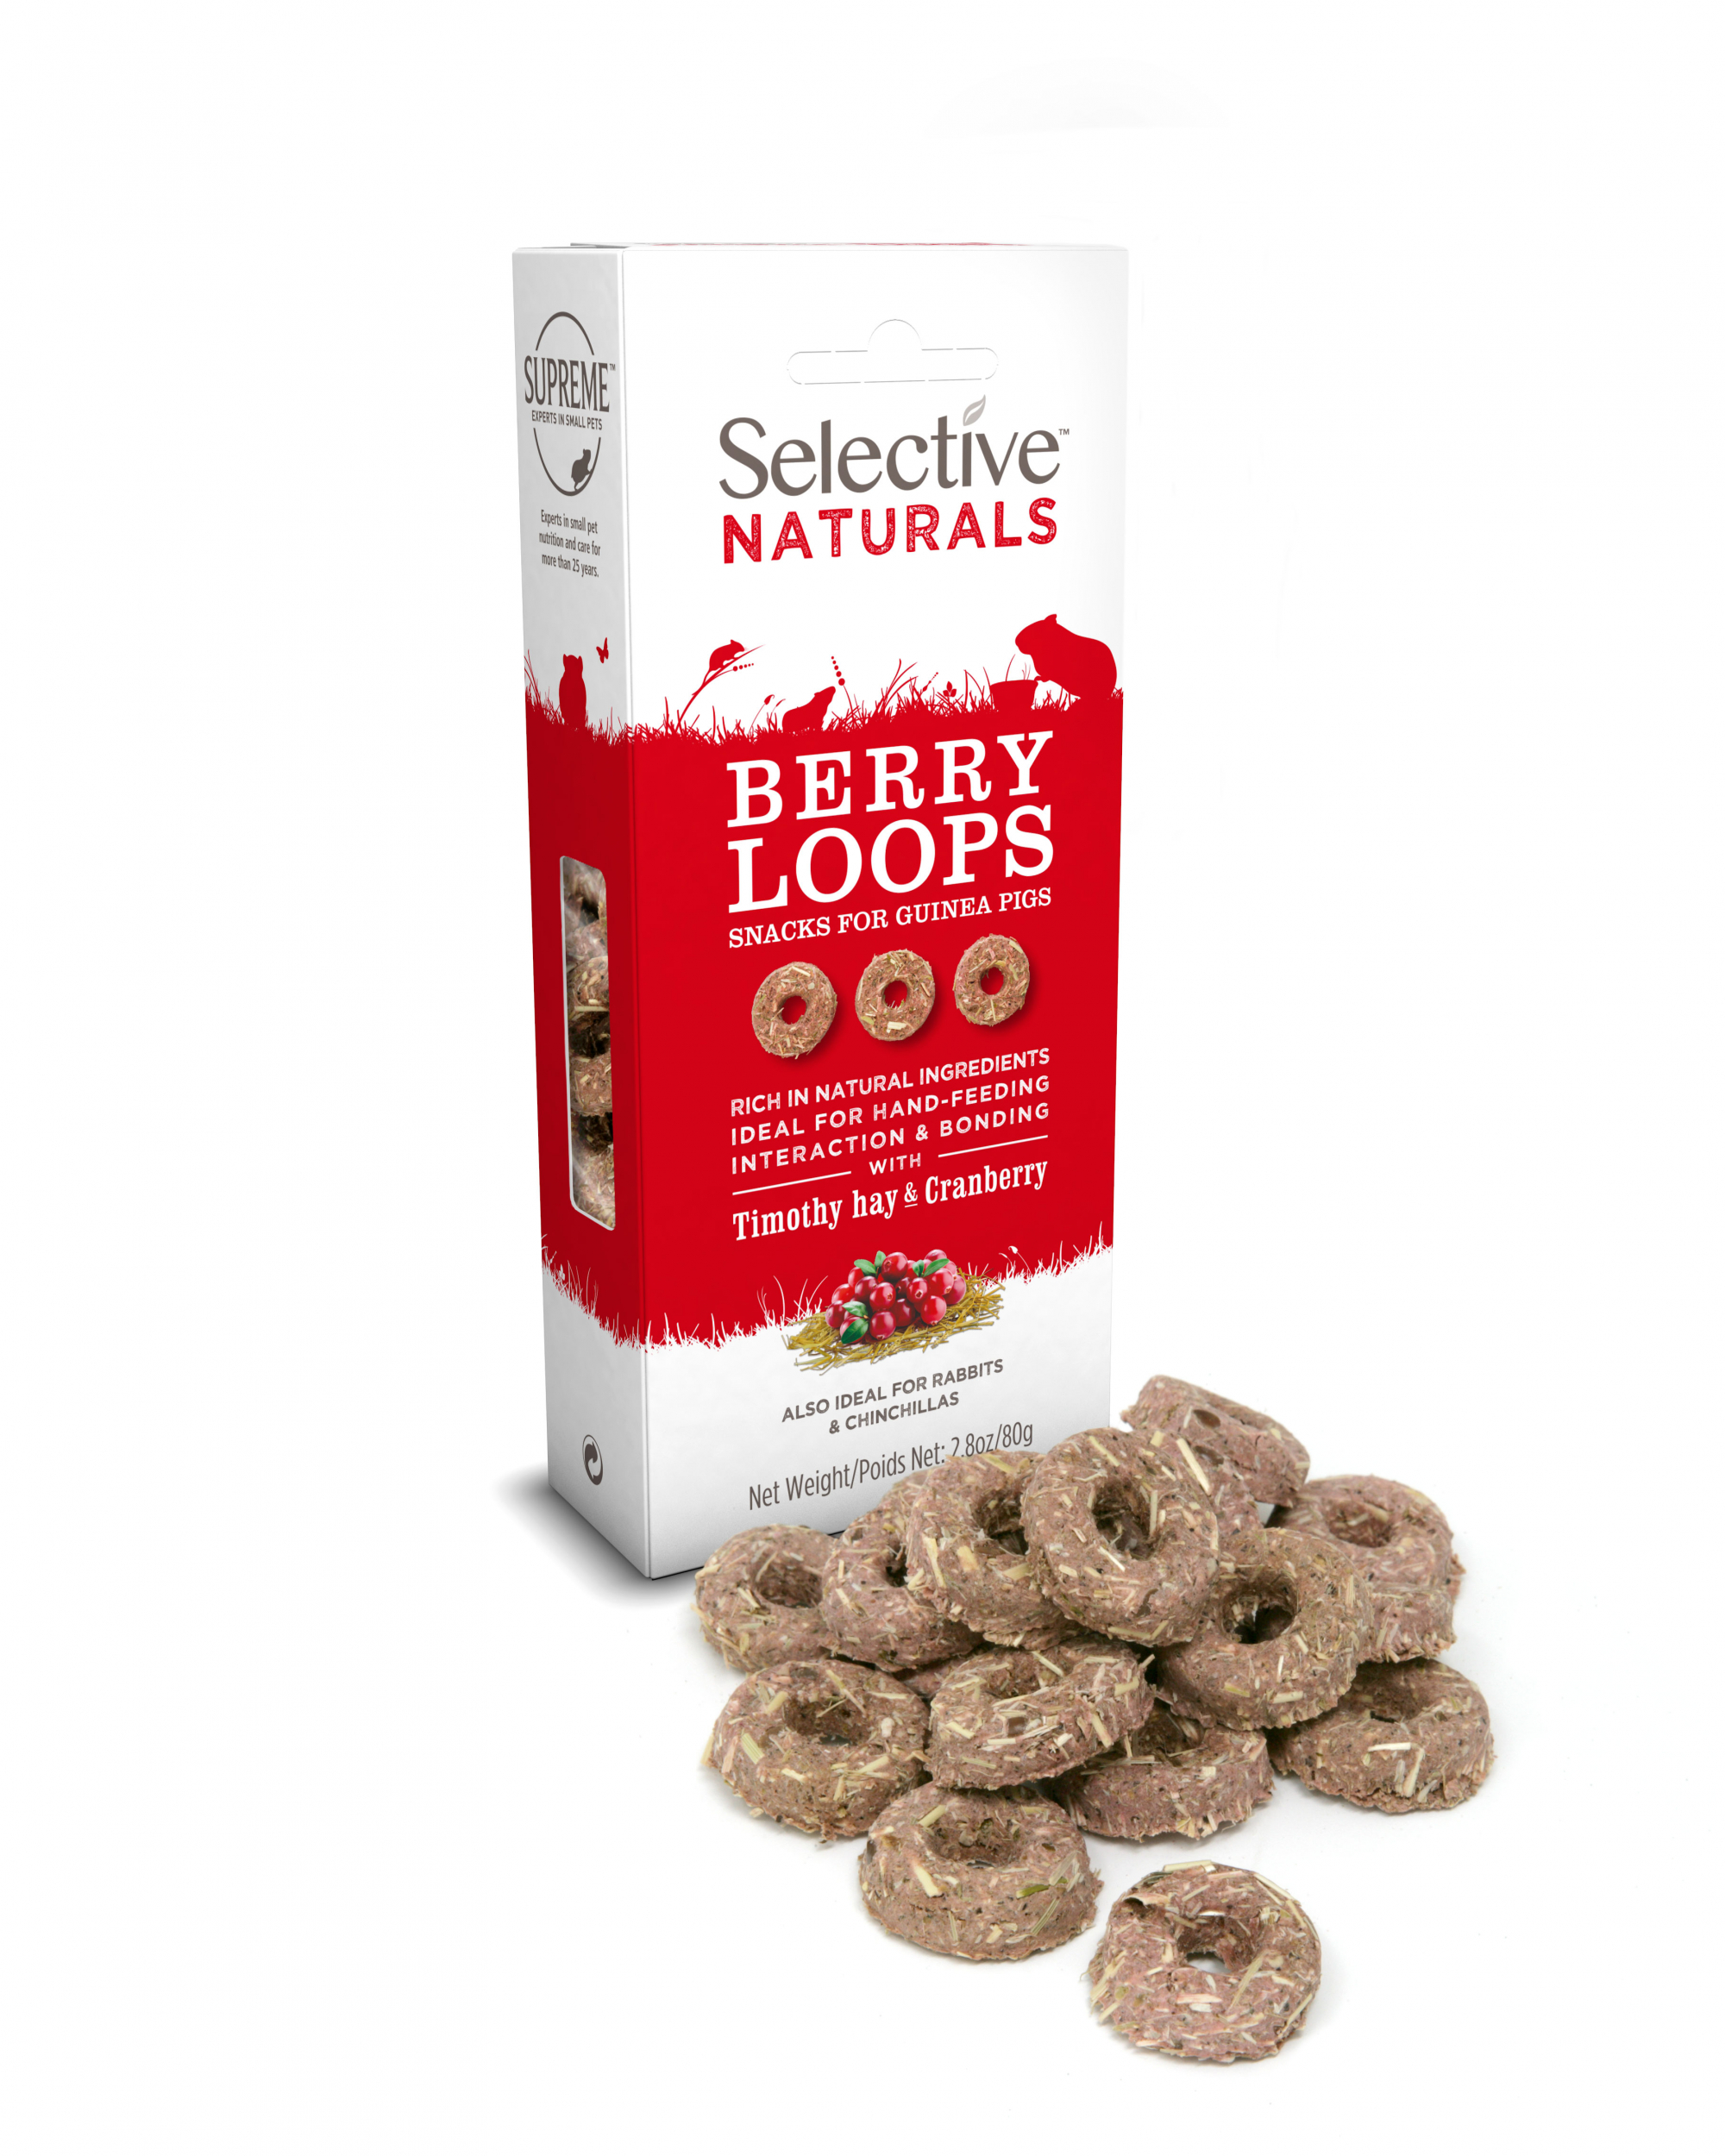 Selective Naturals Berry Loops snacks para cobayas, conejos y roedores